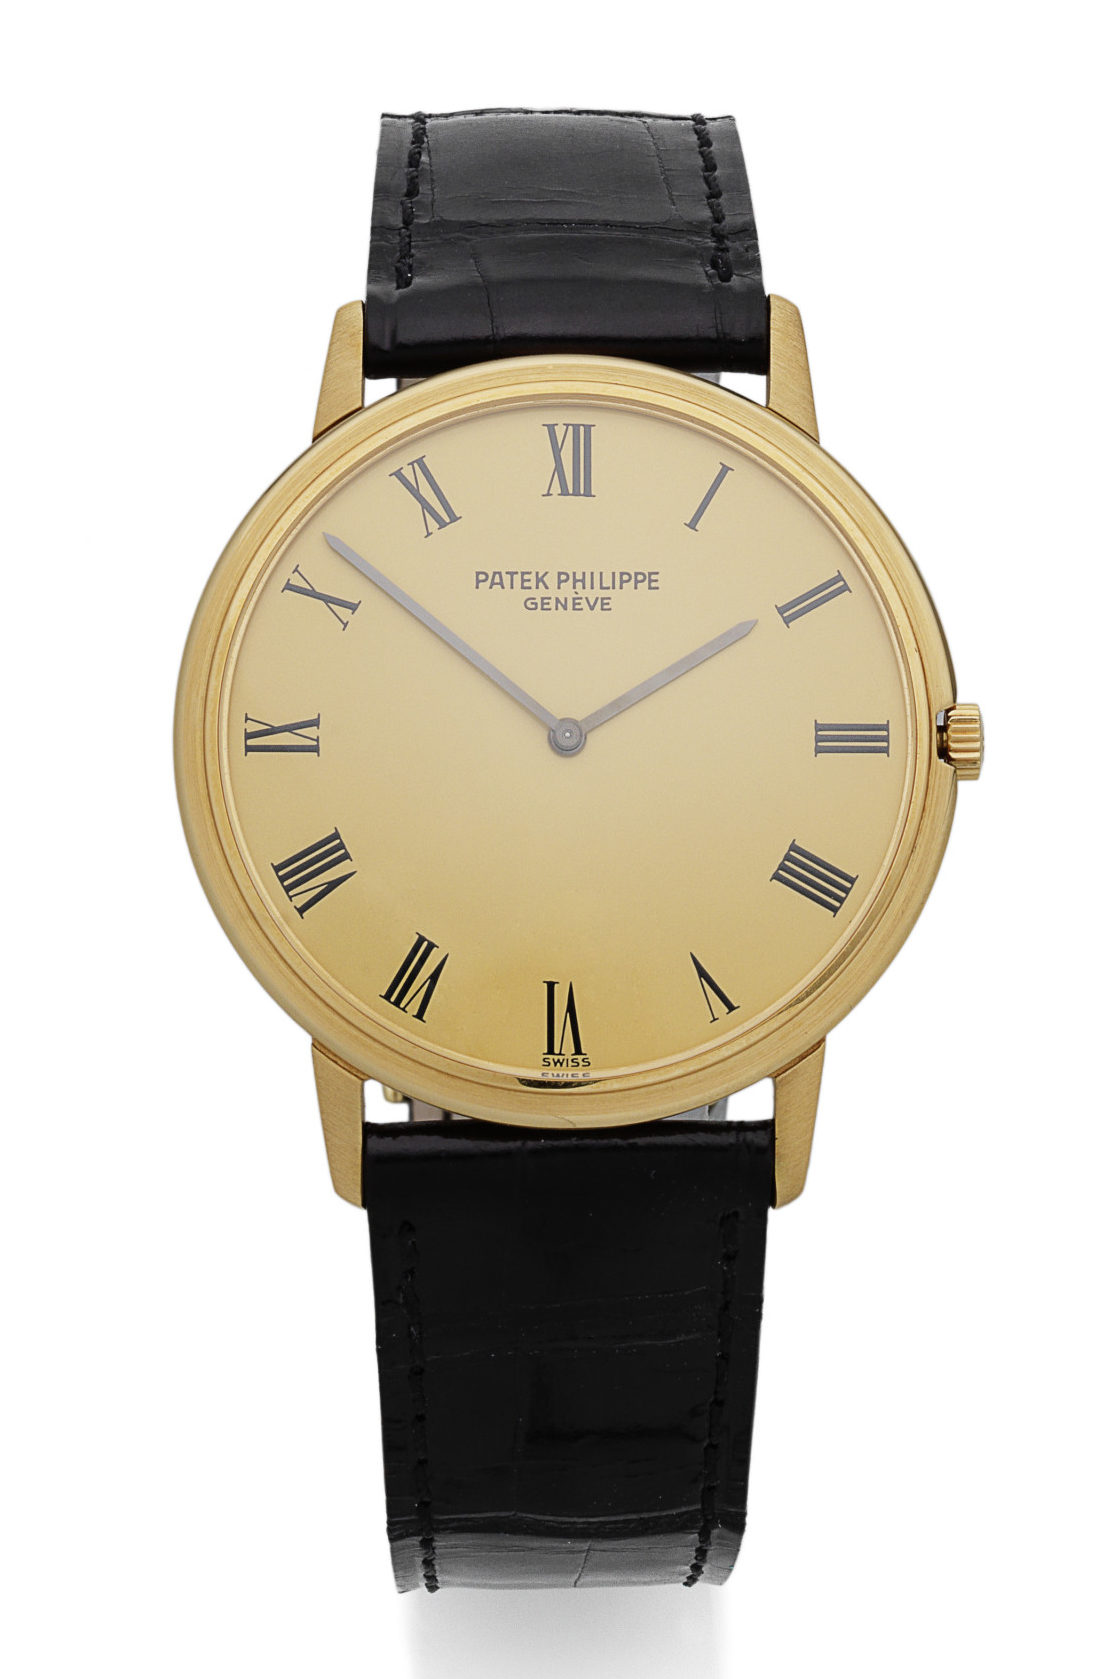 Patek philippe. An 18k gold manual wind wristwatch calatrava, ref: 3588, manufactured in 1970. £5,625